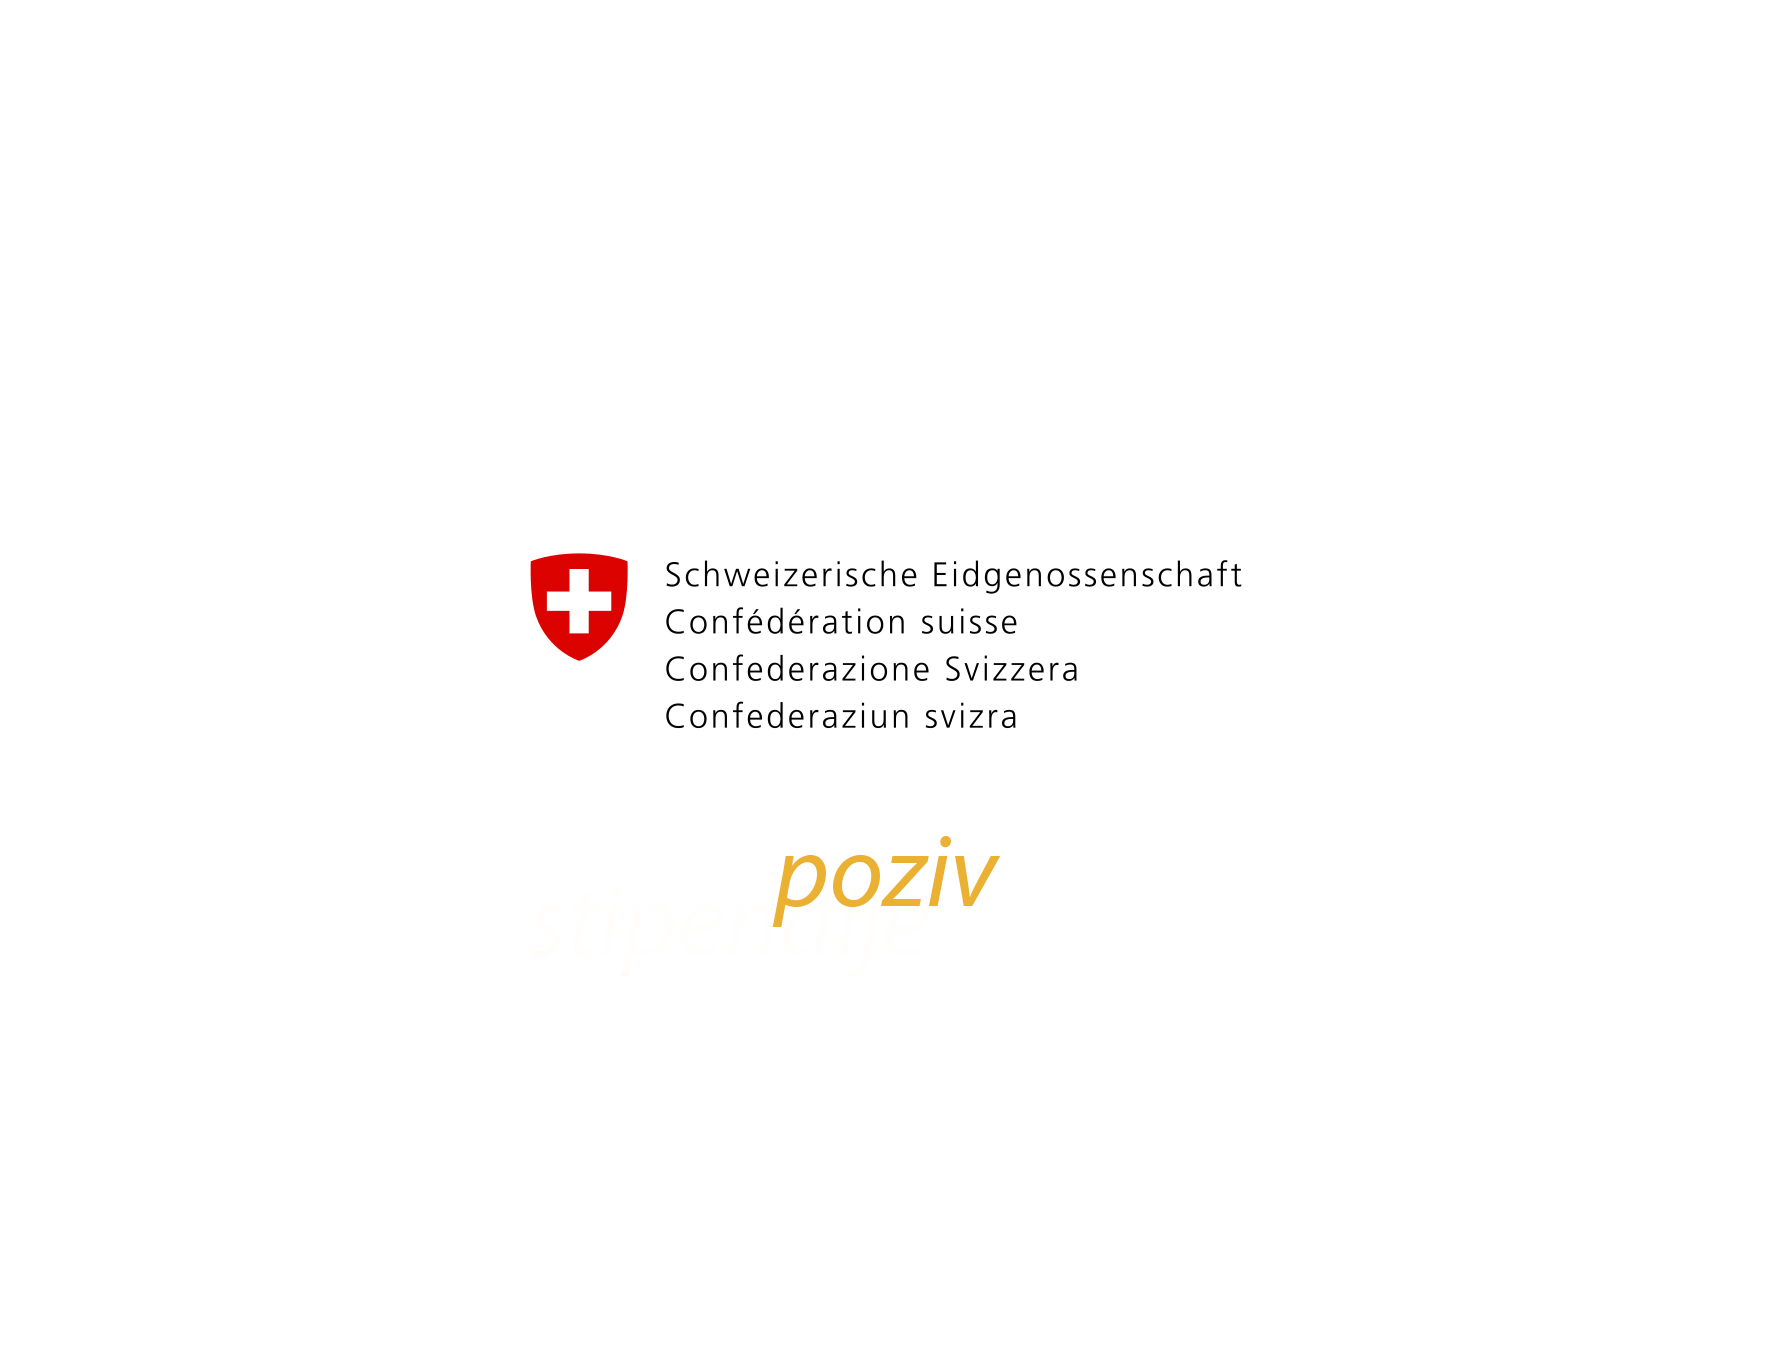 Poziv za promociju istraživanja i inovacija Švicarske agencije za razvoj i kooperaciju SDC